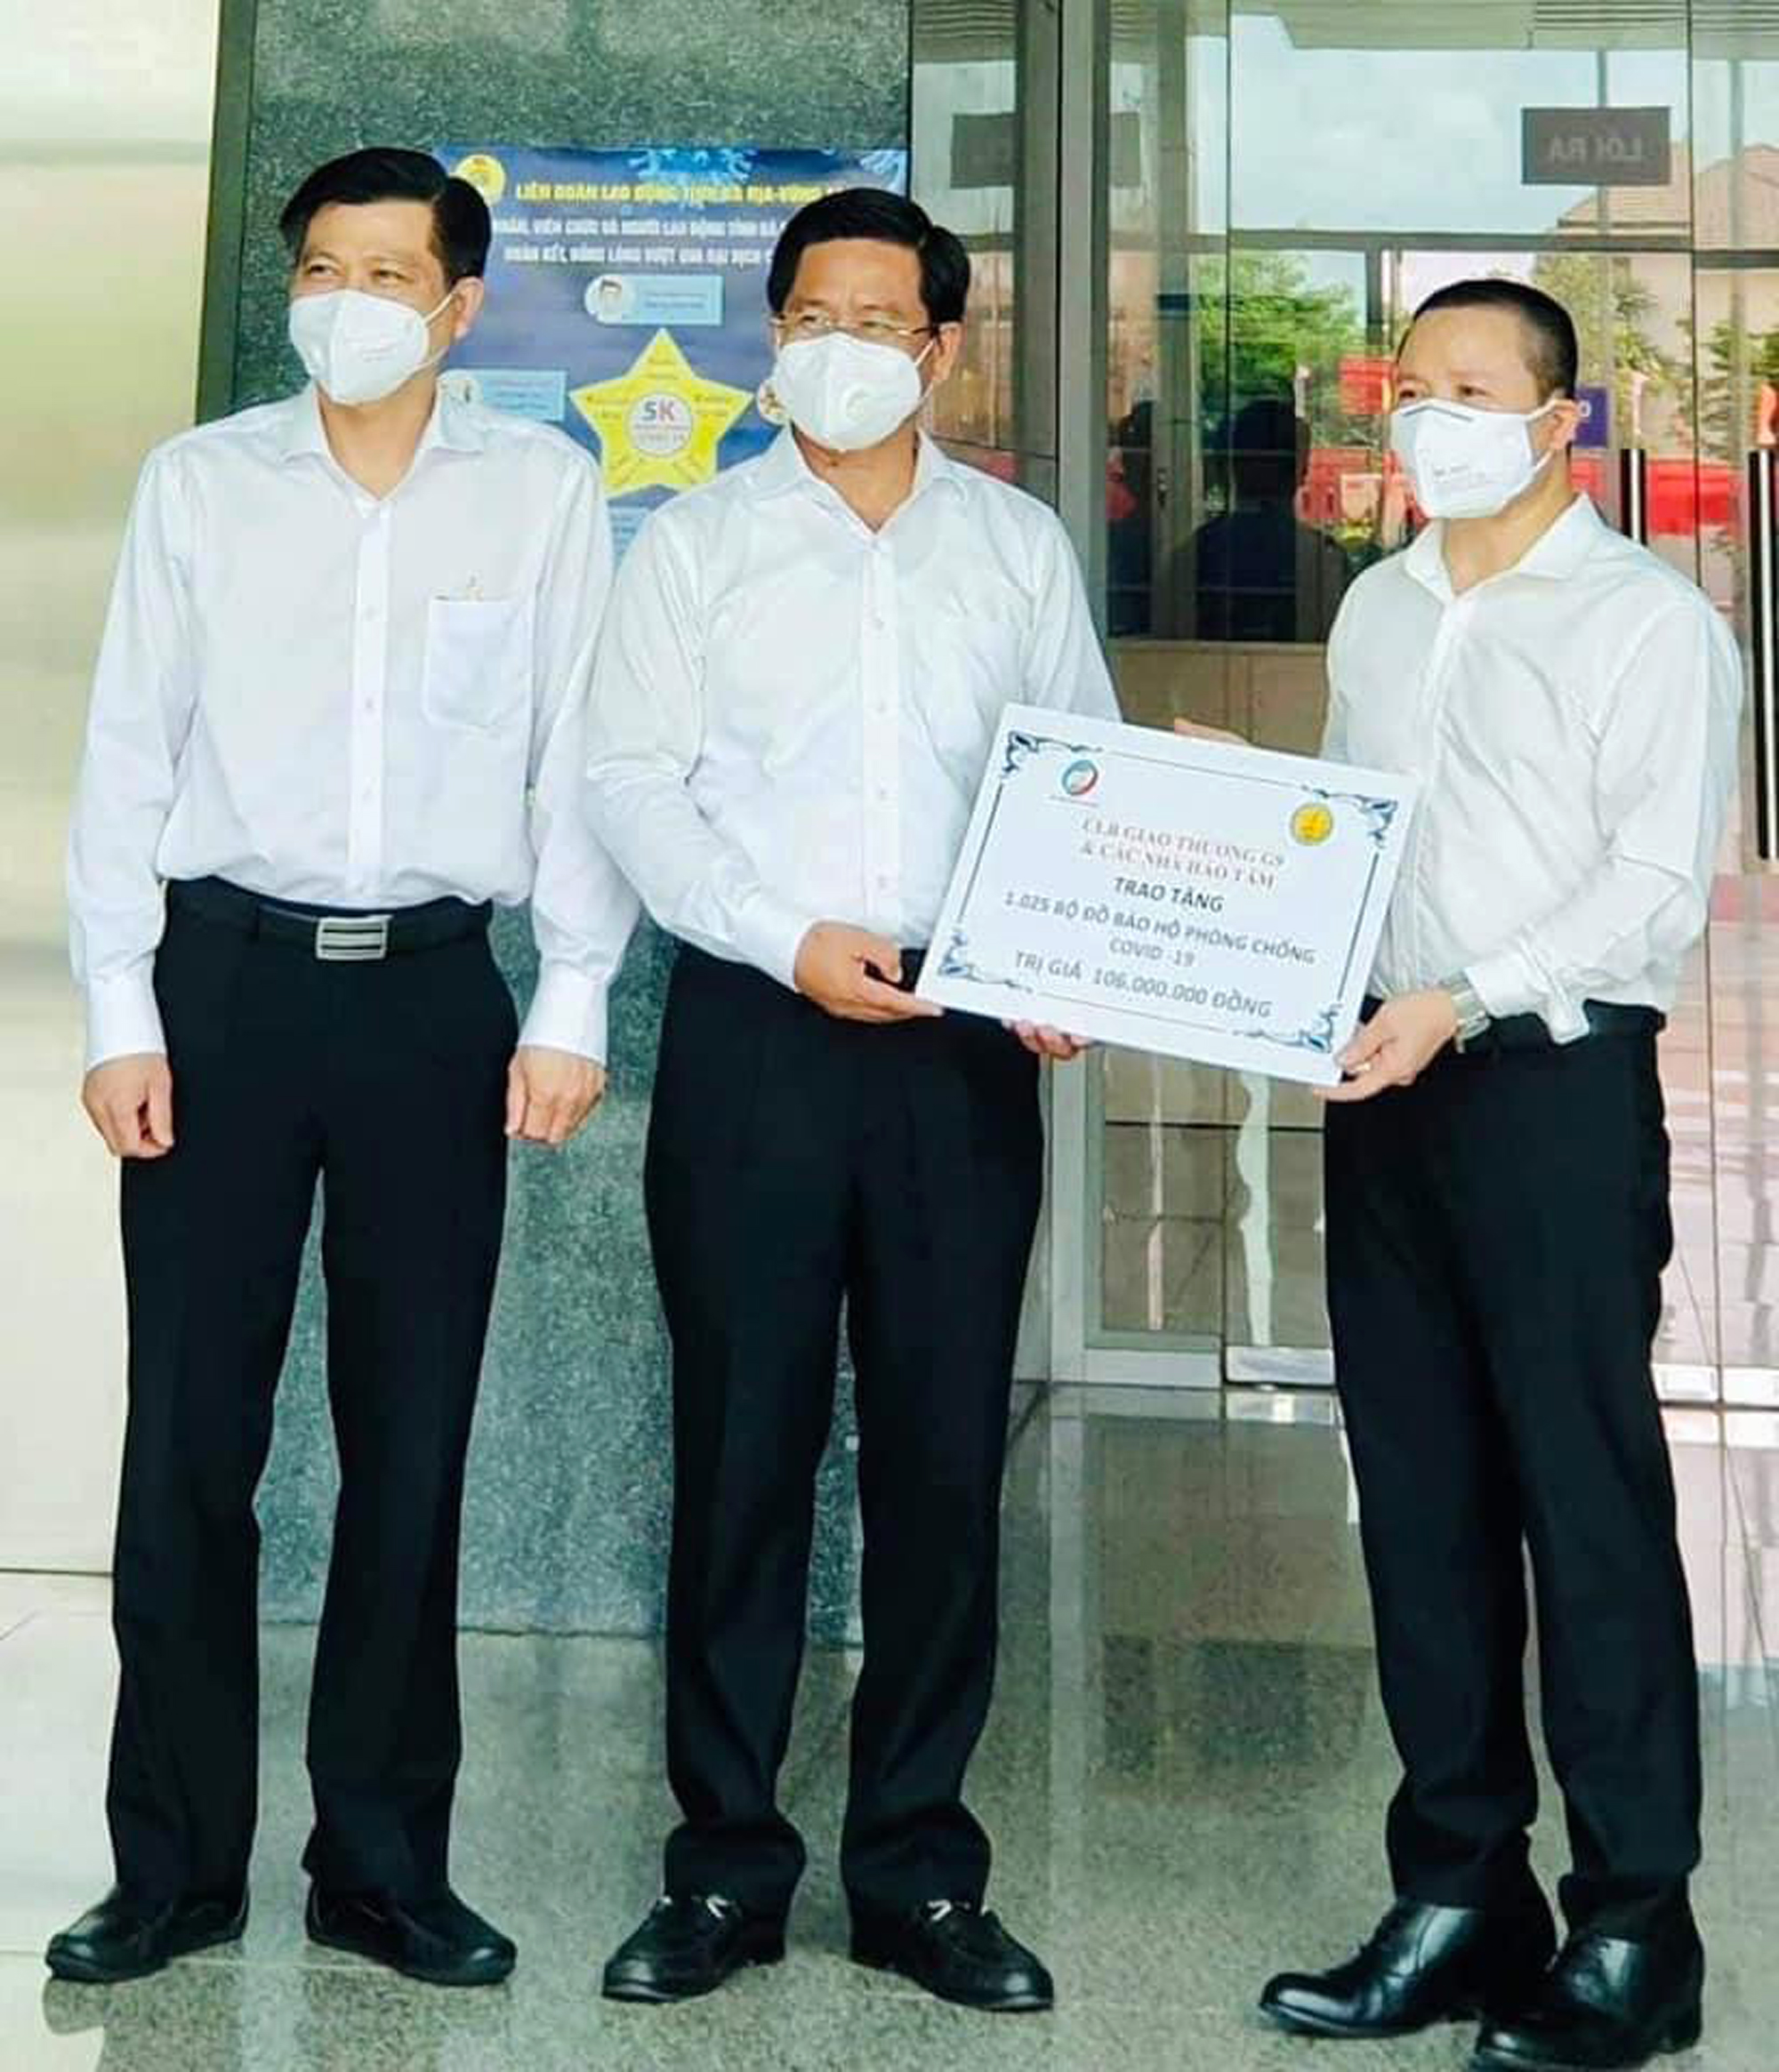 Ông Trần Văn Tuấn, Phó Chủ tịch UBND tỉnh (bìa trái) và ông Bùi Chí Thành, Chủ tịch UBMTTQ Việt Nam tỉnh (giữa) tiếp nhận vật tư y tế do CLB Giao thương G9 trao tặng.